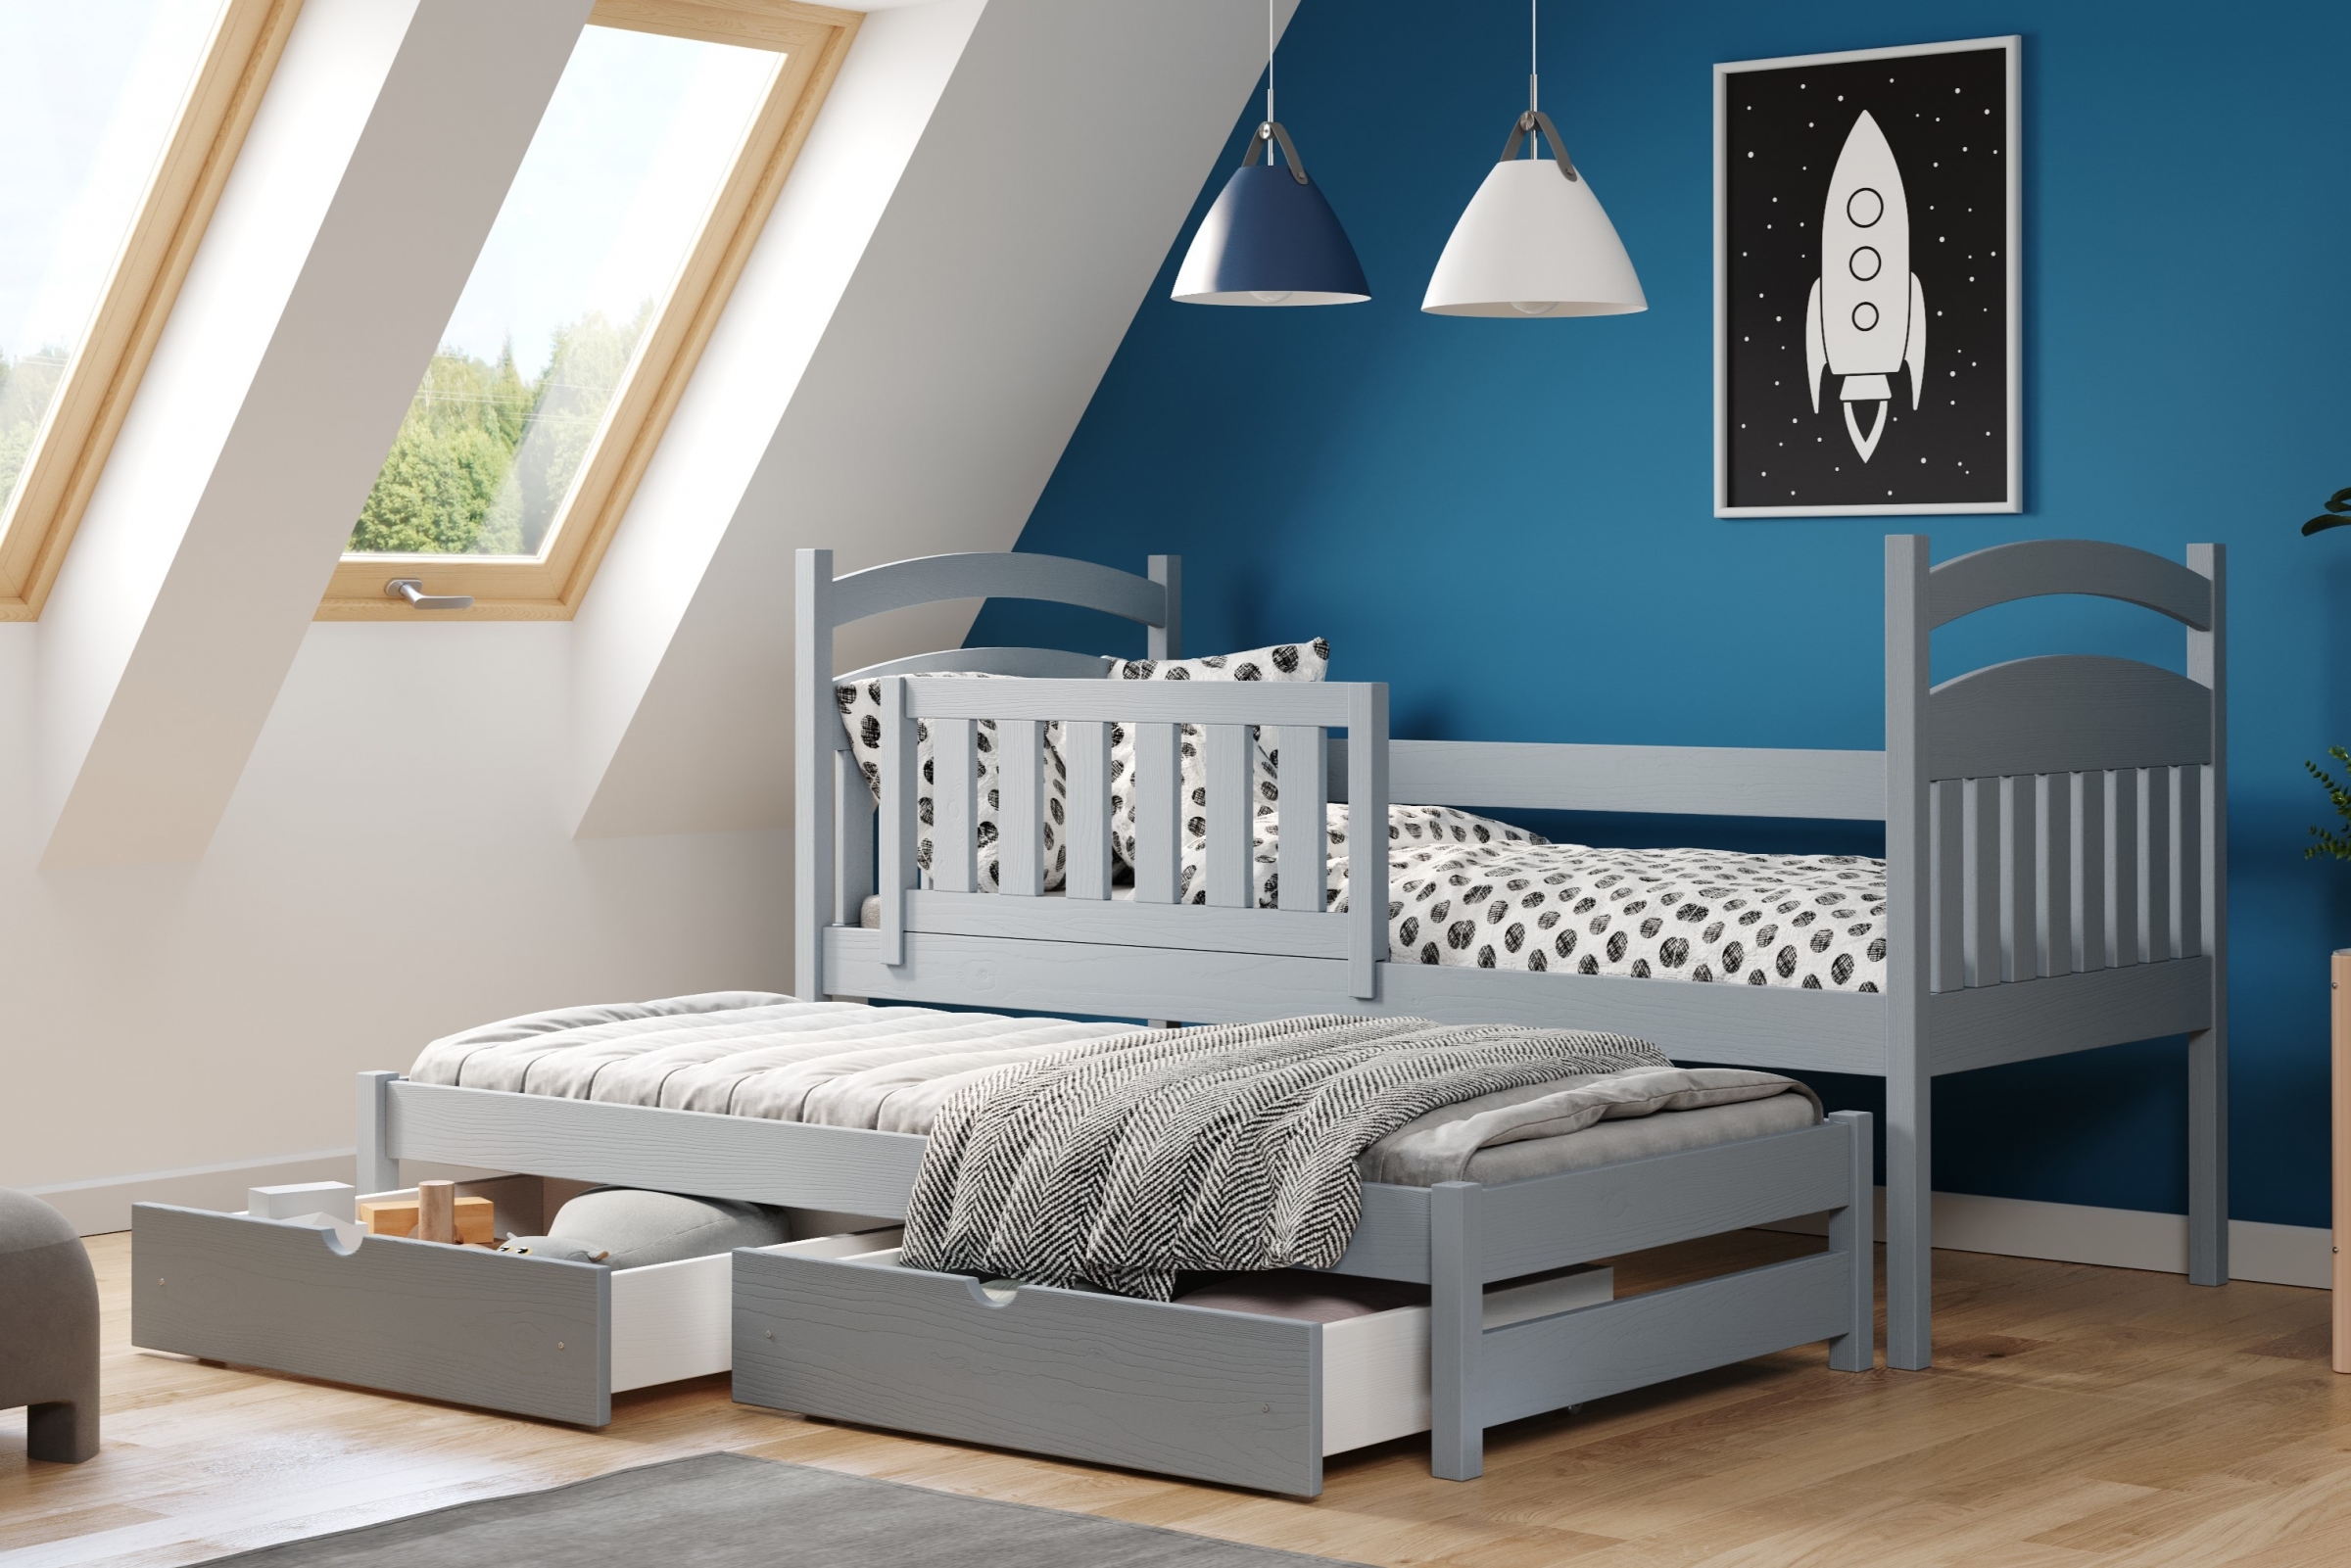 Detská posteľ prízemná výsuvna Amely - Farba šedý, rozmer 90x180 Posteľ dzieciece prízemná s výsuvným lôžkom Amely - Farba šedý - vizualizácia